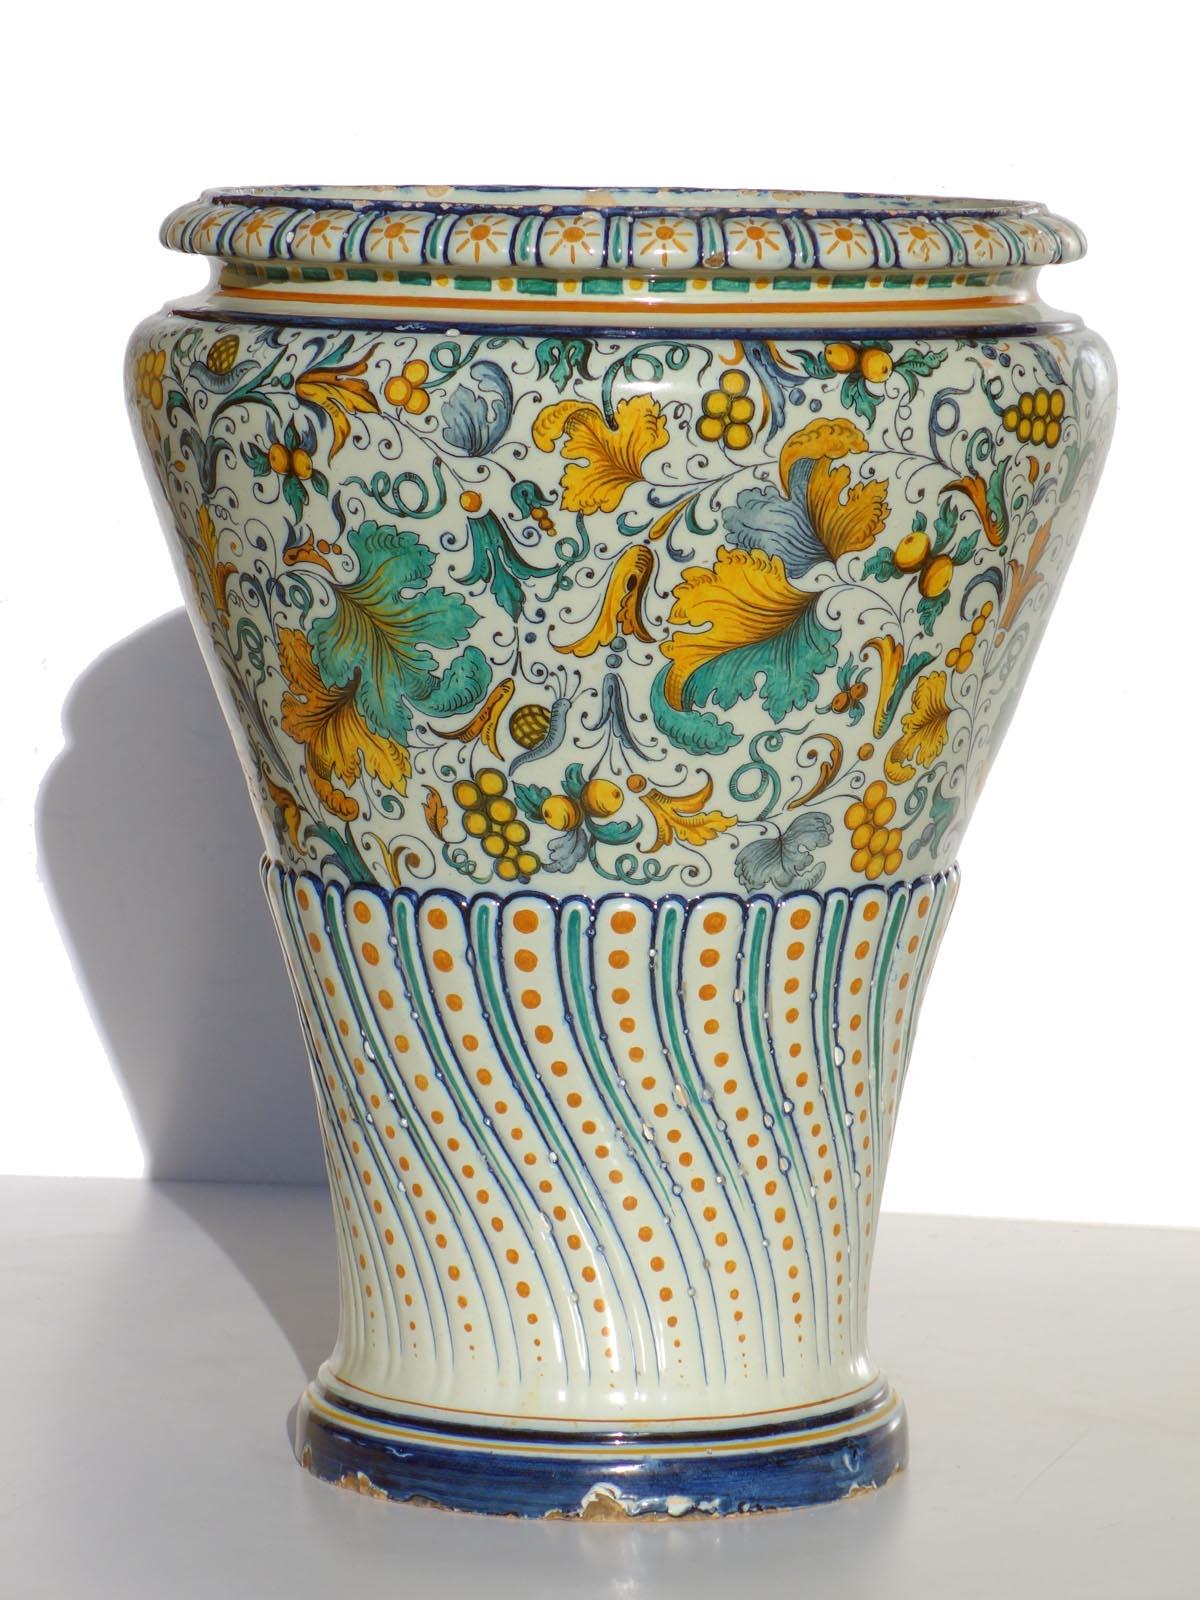 Big Majolica vase
Ginori
Italy, 1850-1890

Very good codiction
Difetto di cottura sotto la base (vedere fotografia)